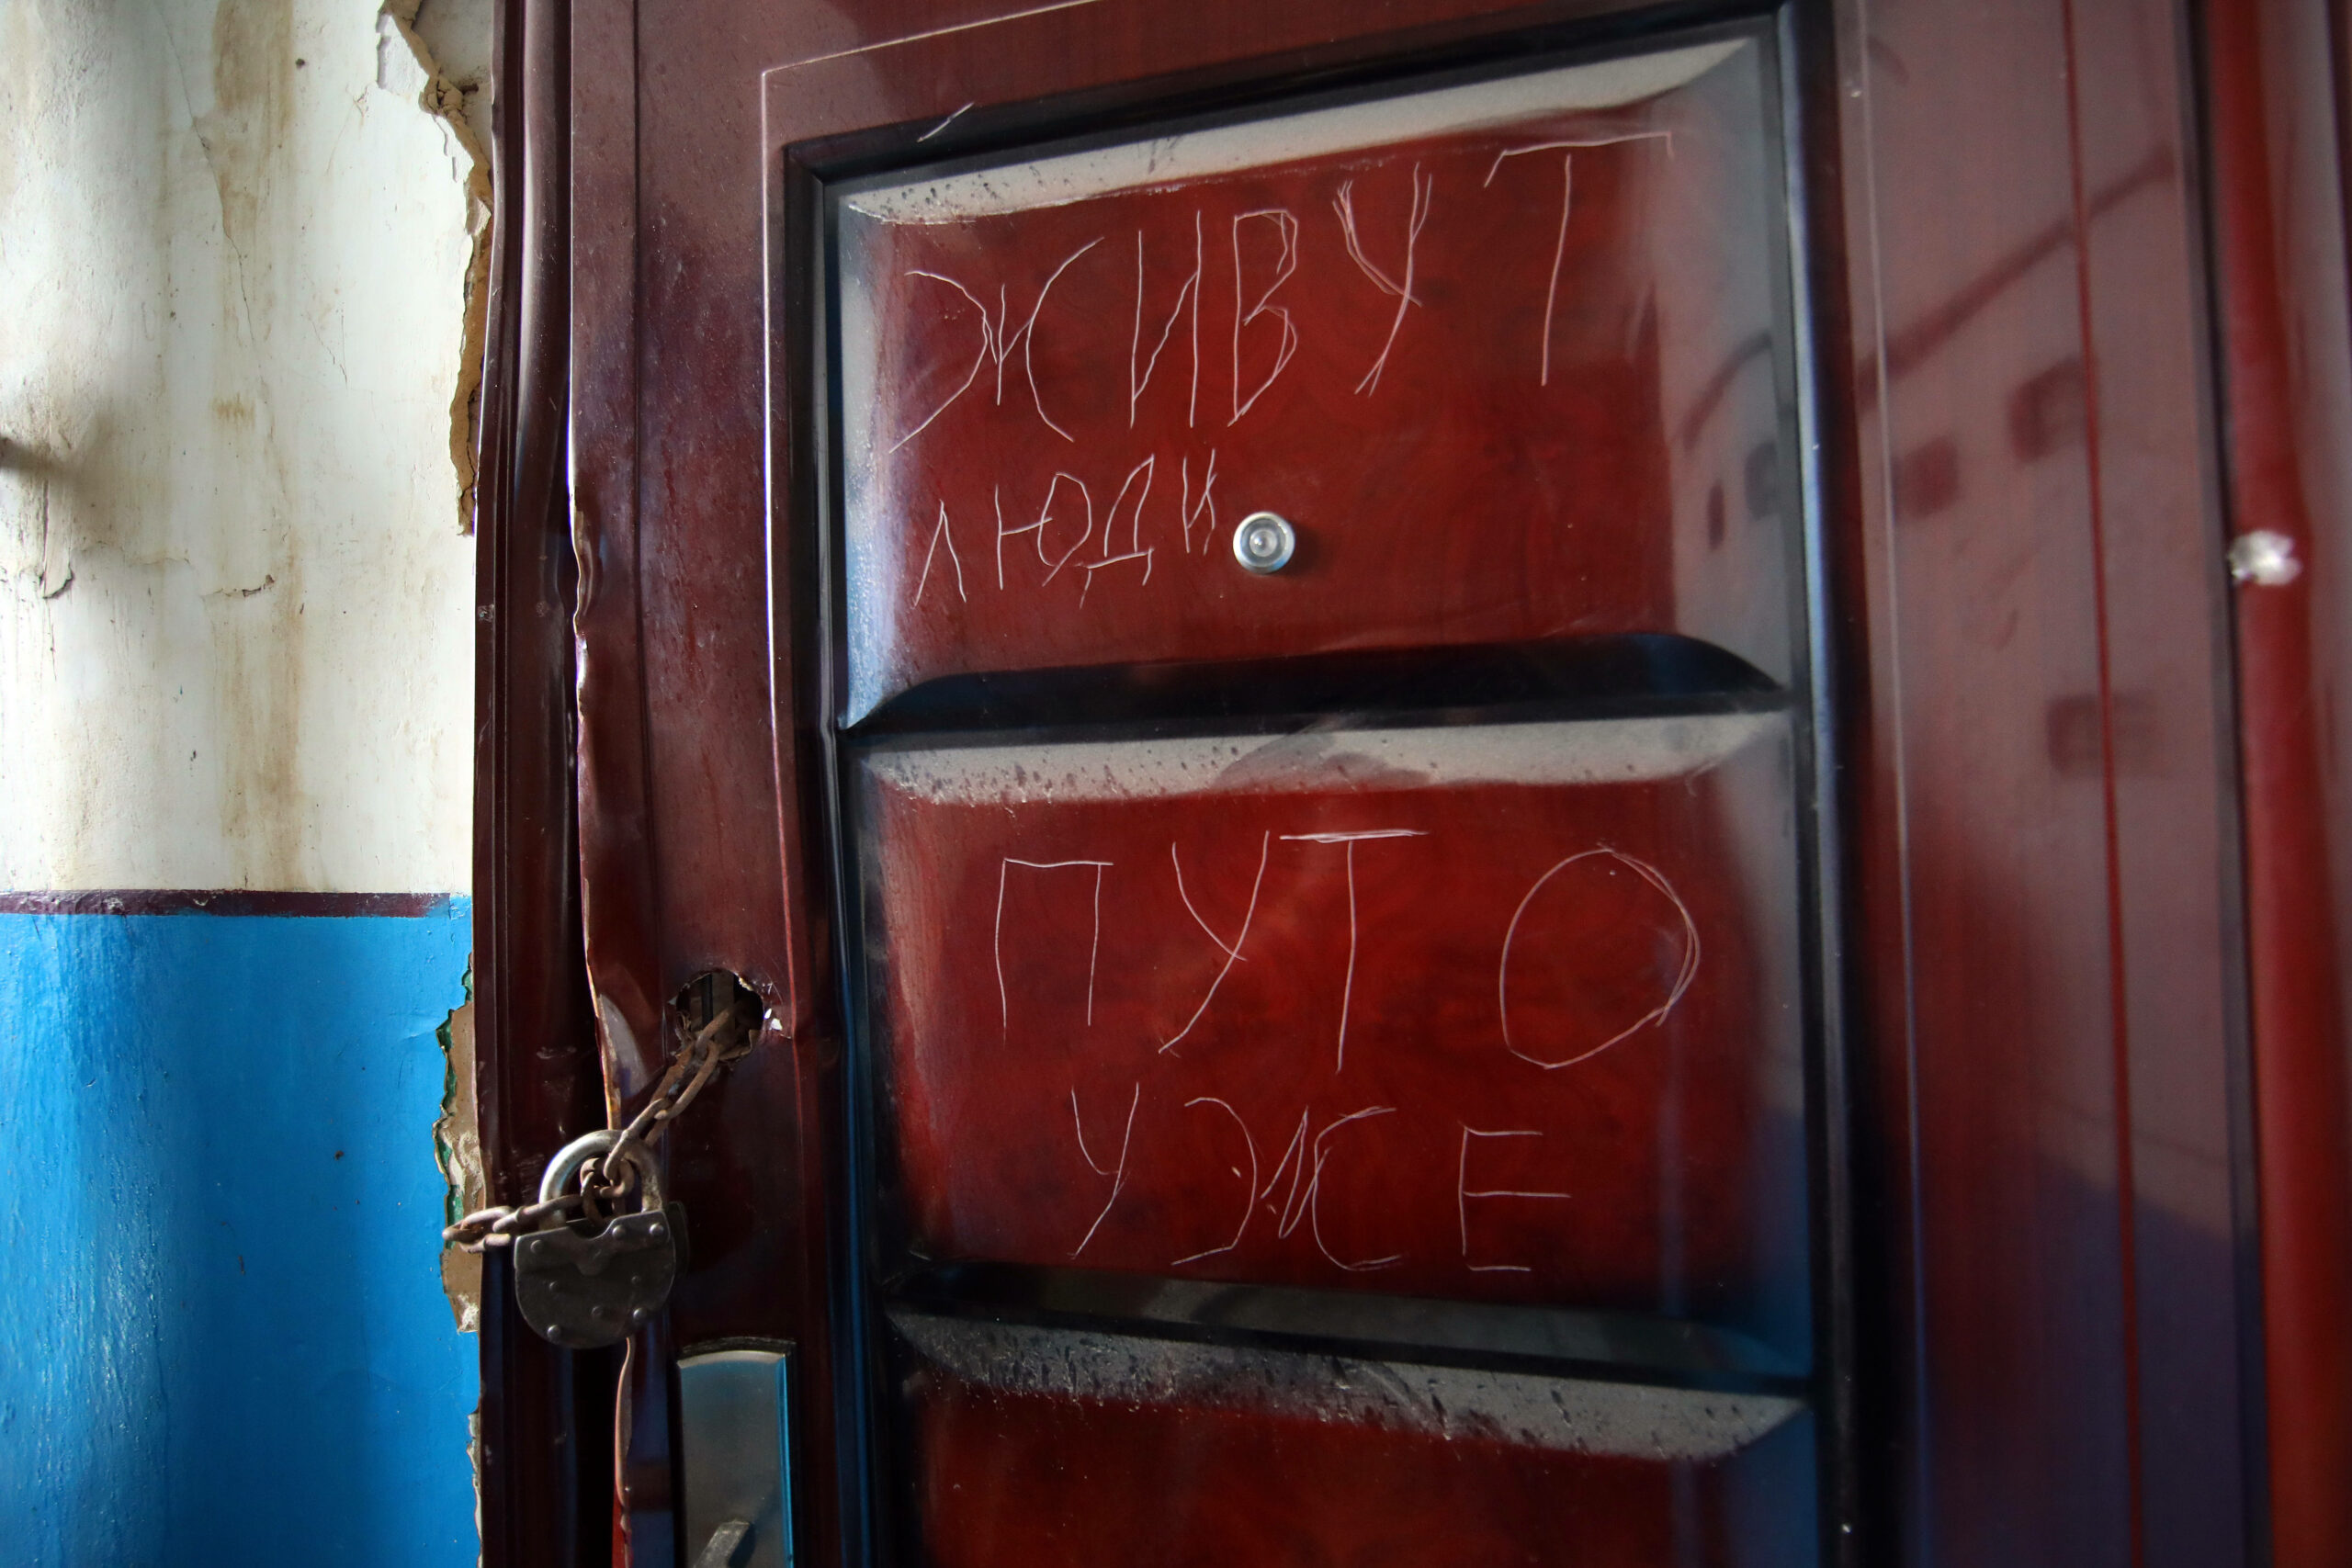 Надписи на двери дома в Изюме, Харьковская область. 15 сентября 2022 года. Фото UKRINFORM AGENCY/Scanpix/LETA